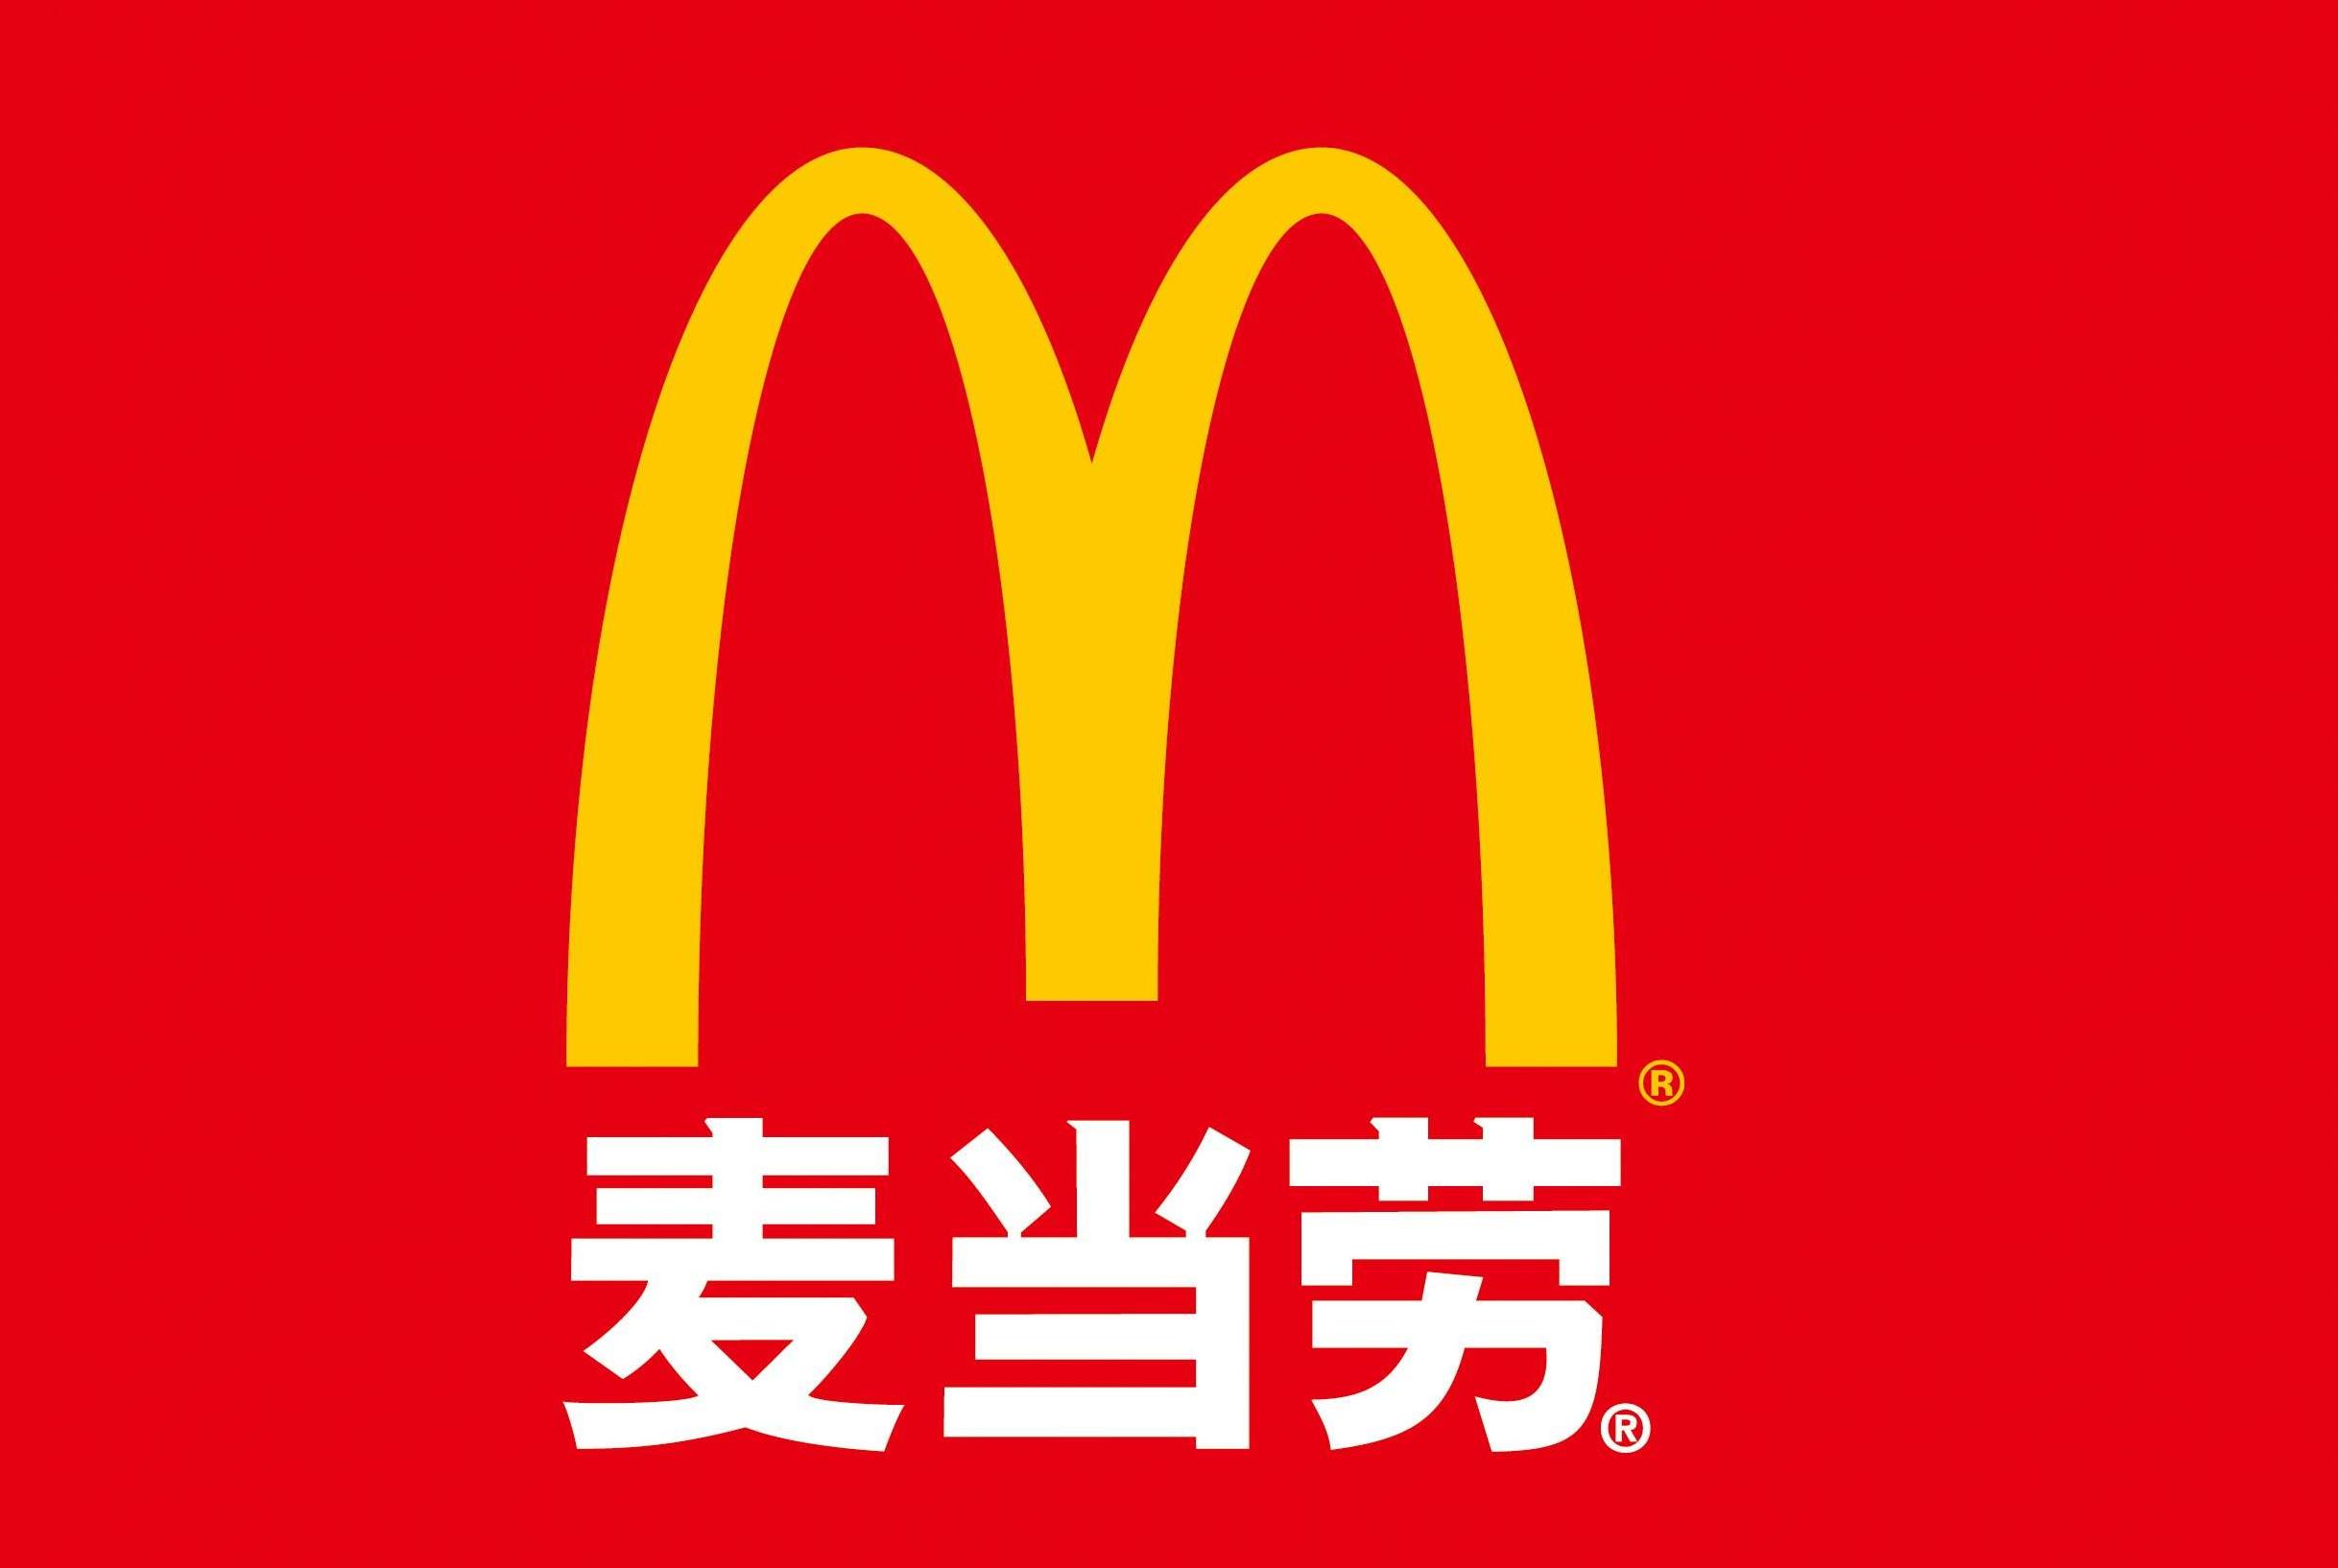 麦当劳(中国)更名为金拱门开店数或倒逼经营模式转变